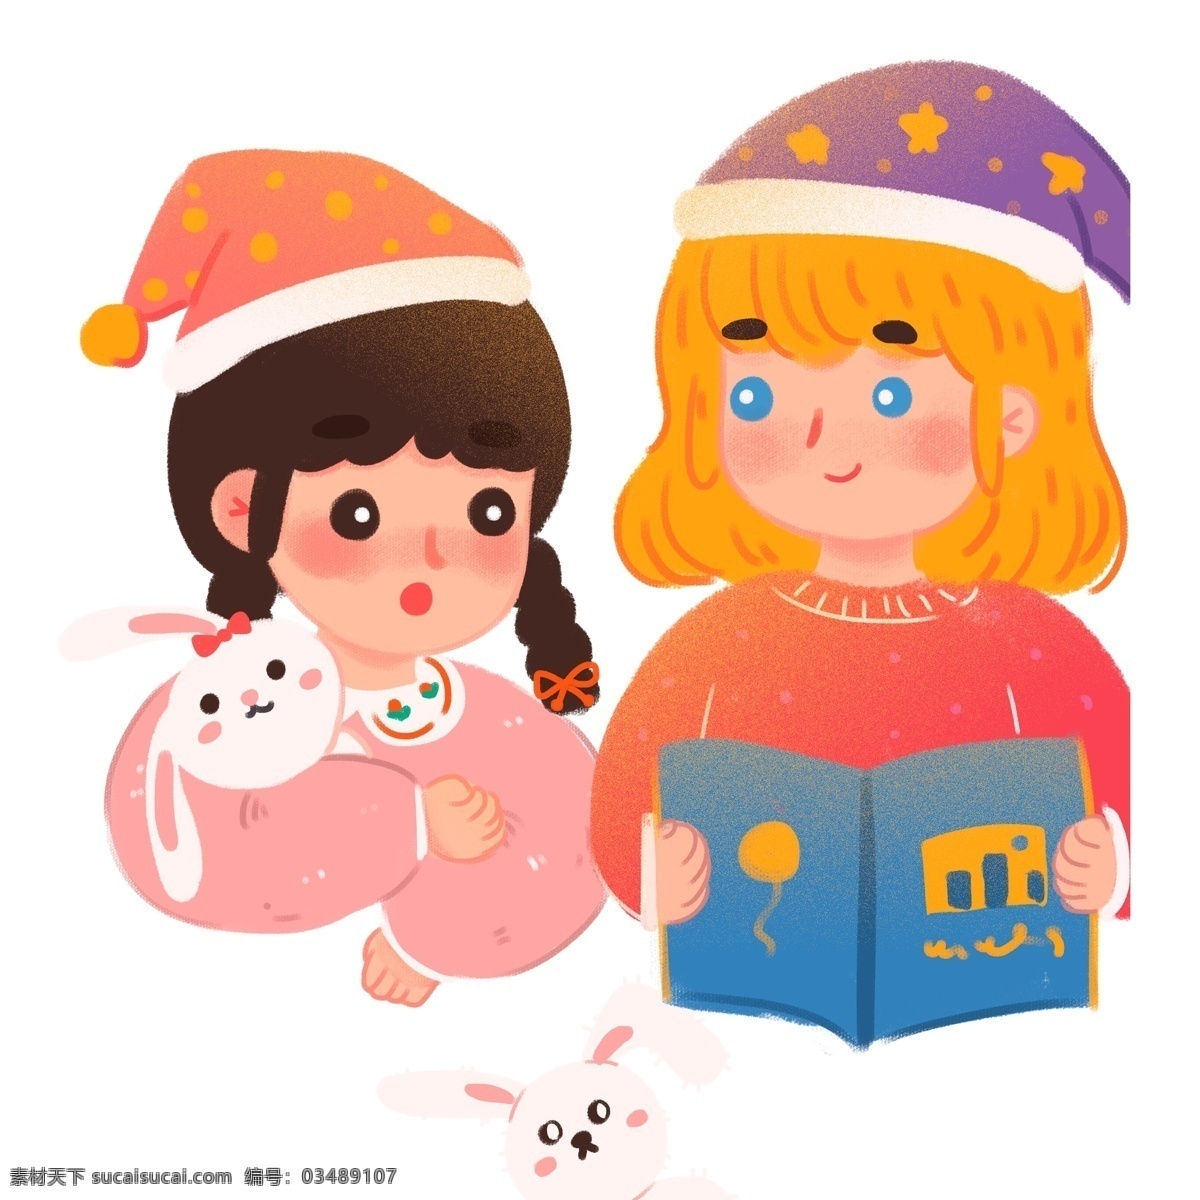 彩绘 读 故事 书 女孩 商用 元素 小清新 帽子 人物 插画 晚安 姐妹 读故事书 兔子玩偶 插画元素